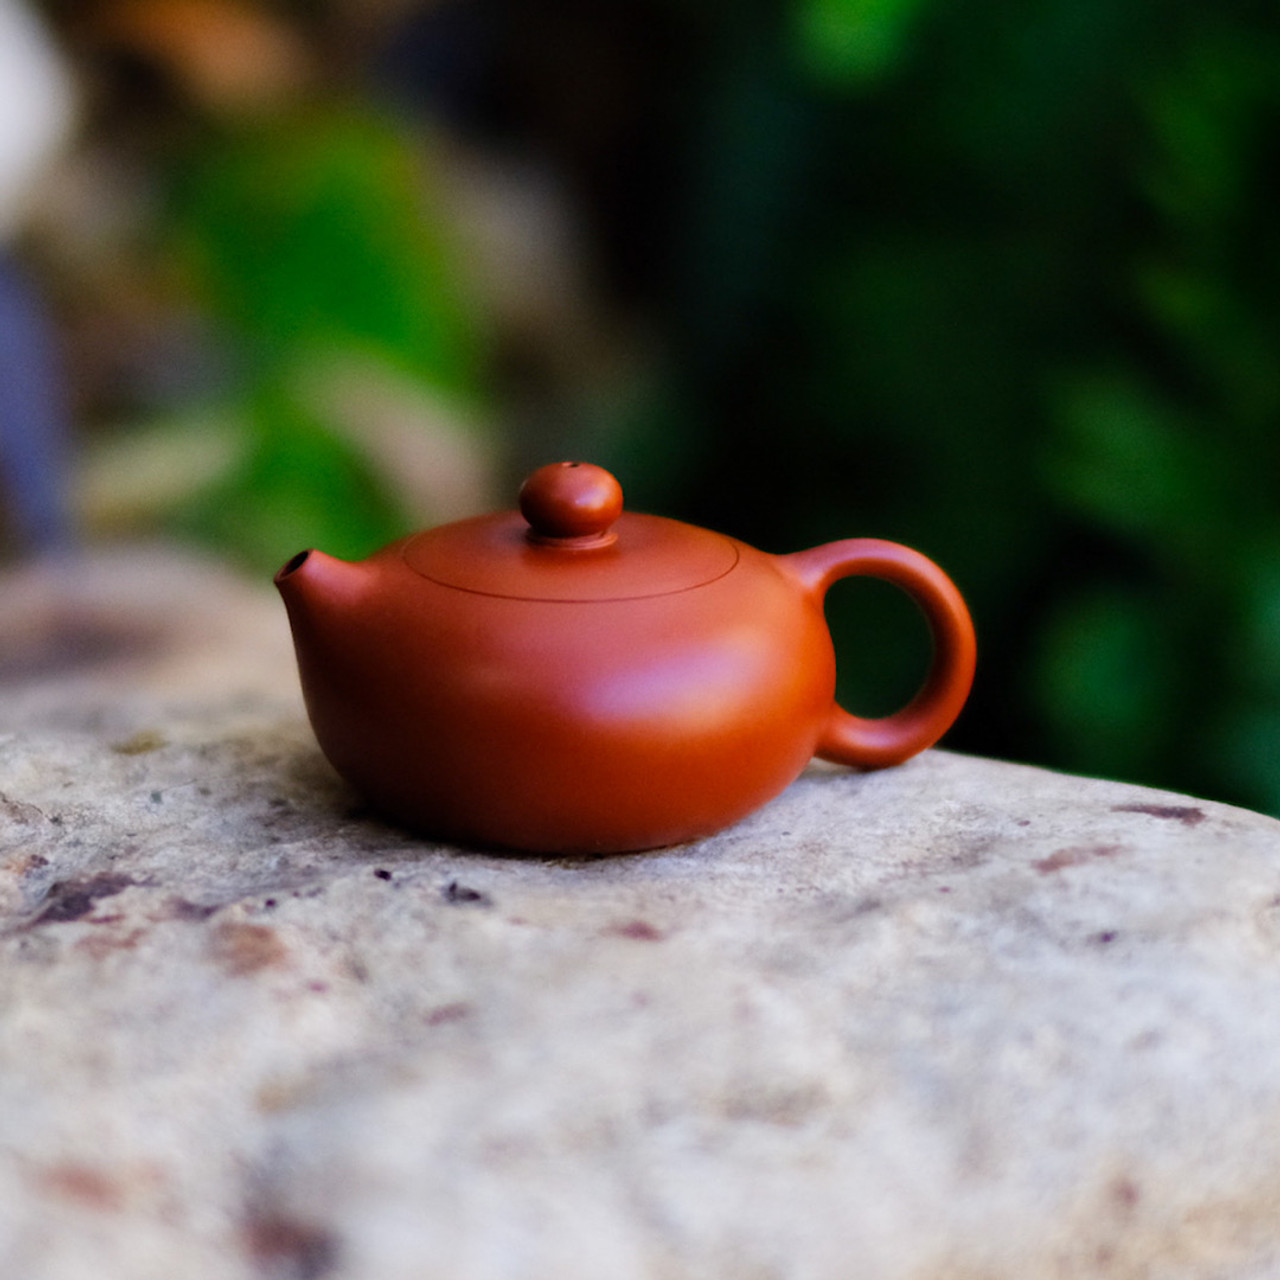 Flat Xishi Yixing Da Hong Pao Crimson Clay Teapot 扁西施宜興大紅袍朱泥茶壺